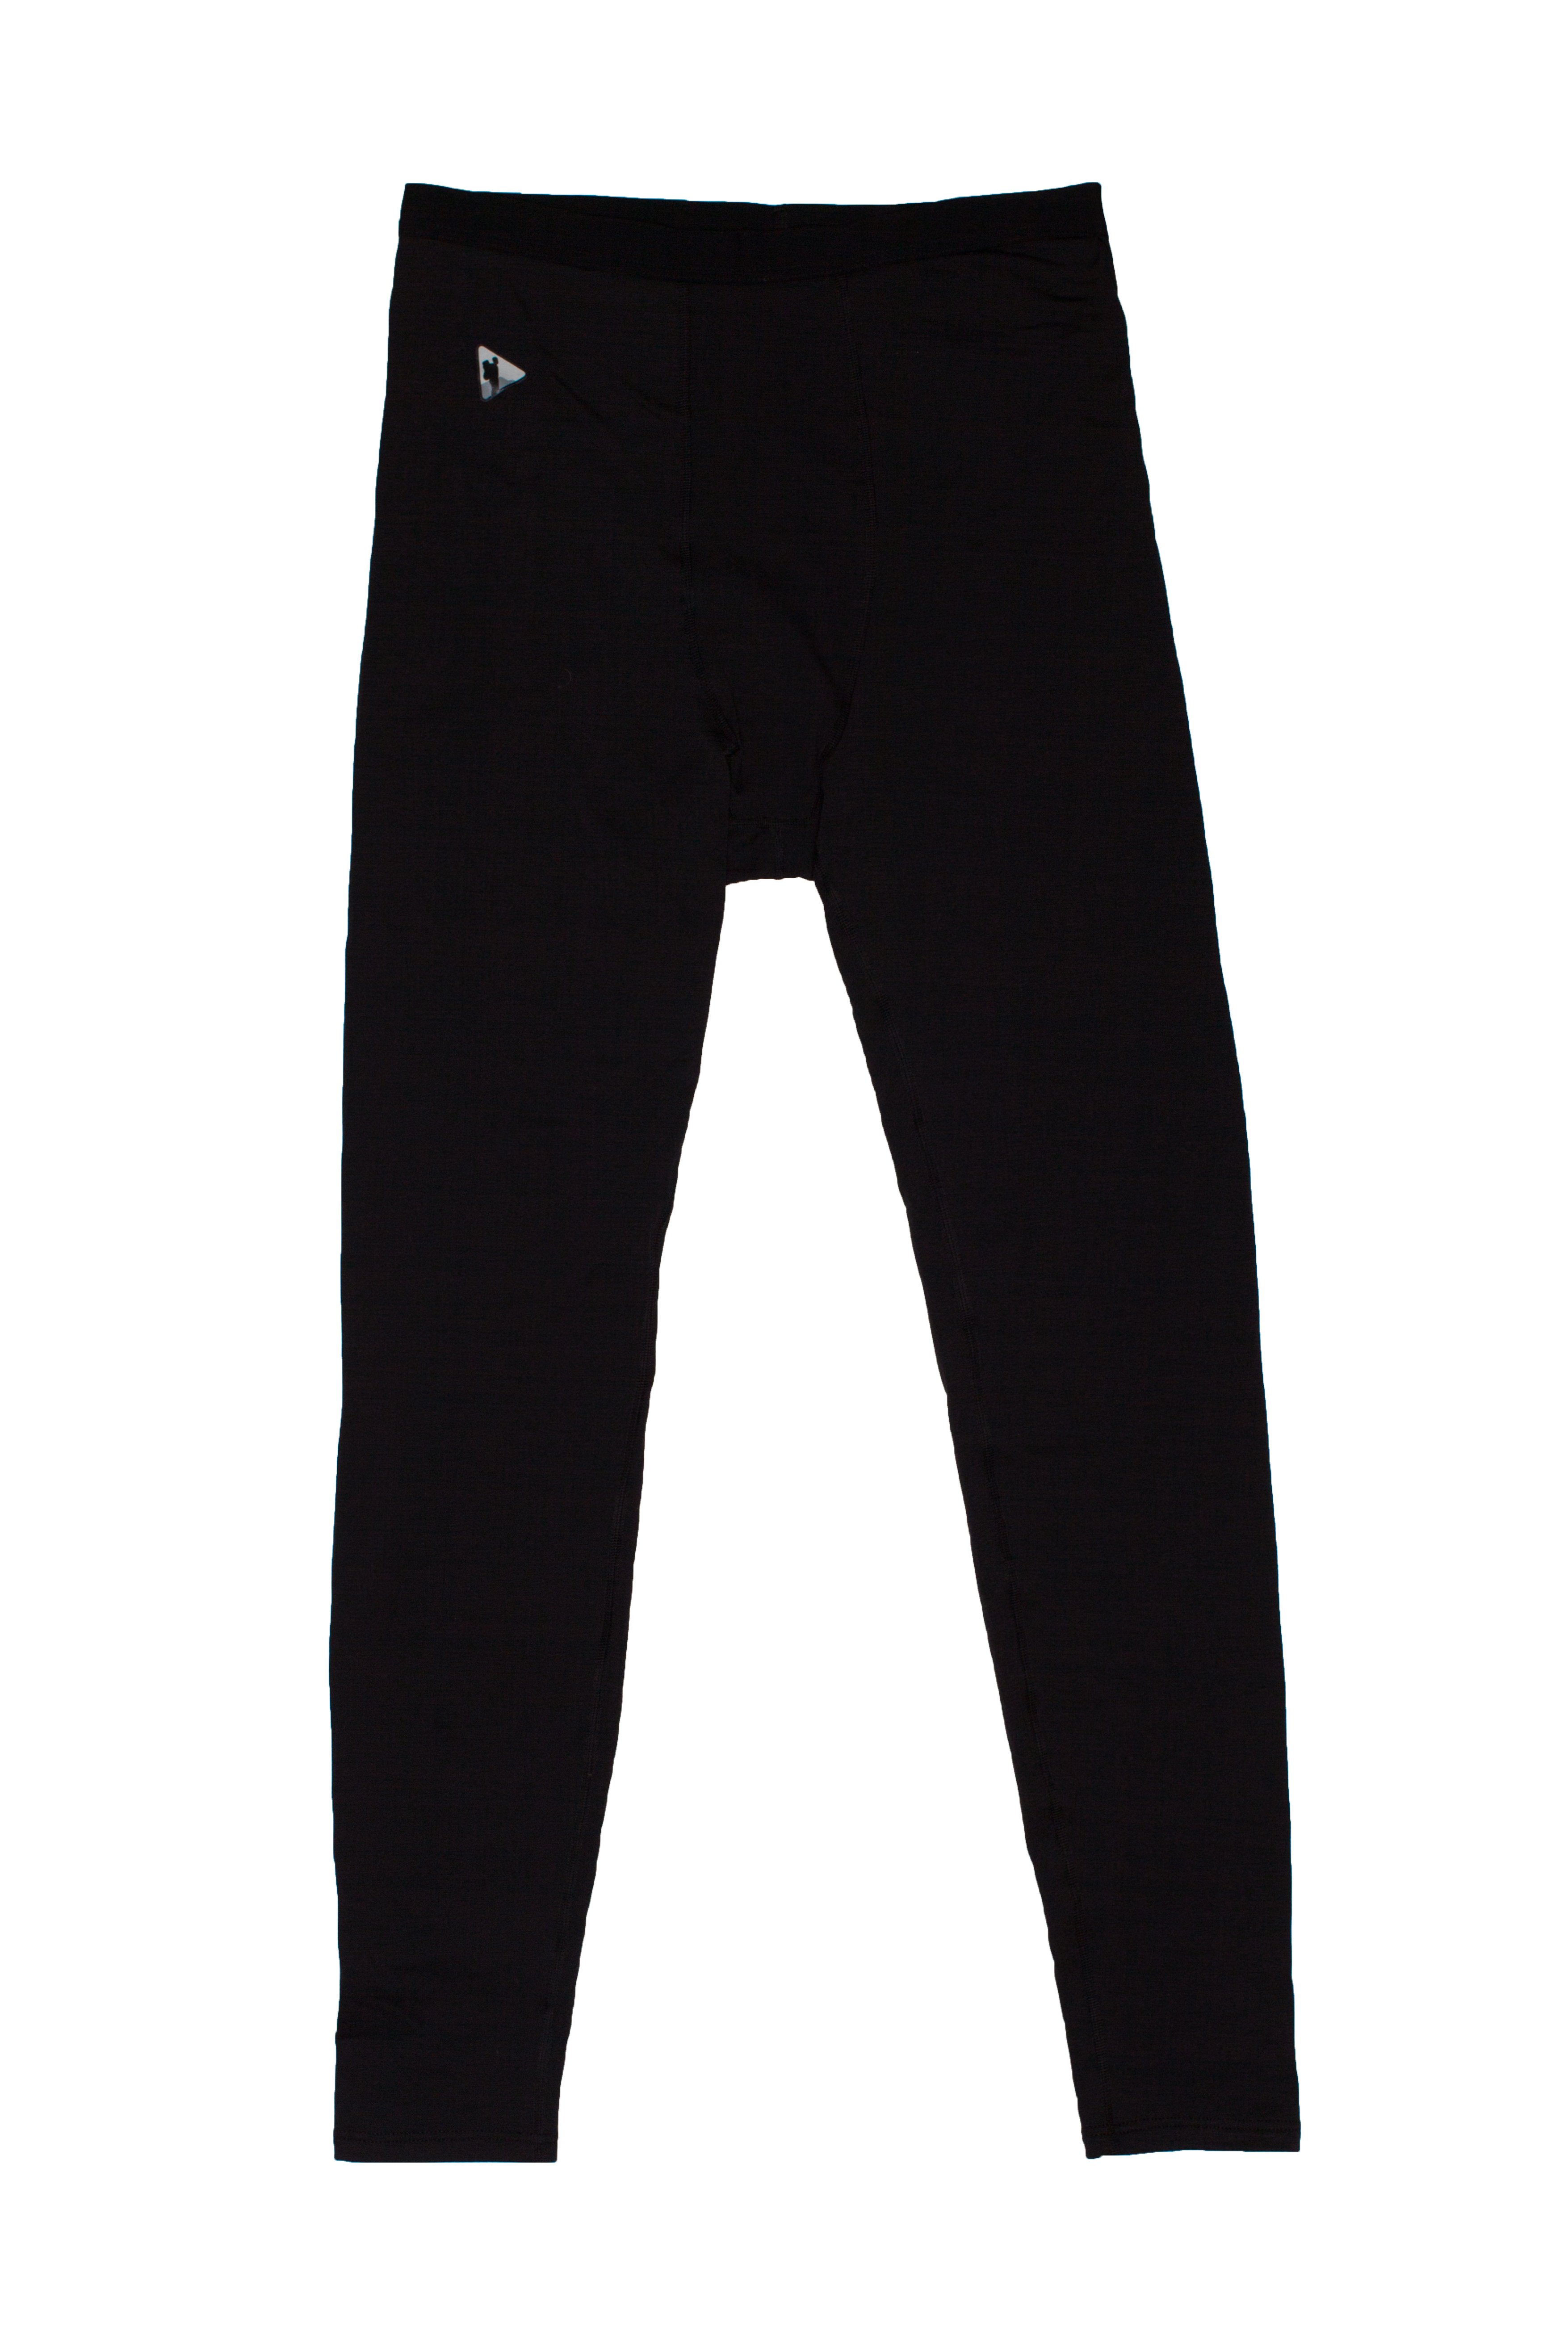 Кальсоны BASK, размер XL, цвет черный 9815P-9009-XL Balance pon man pants v2 - фото 2